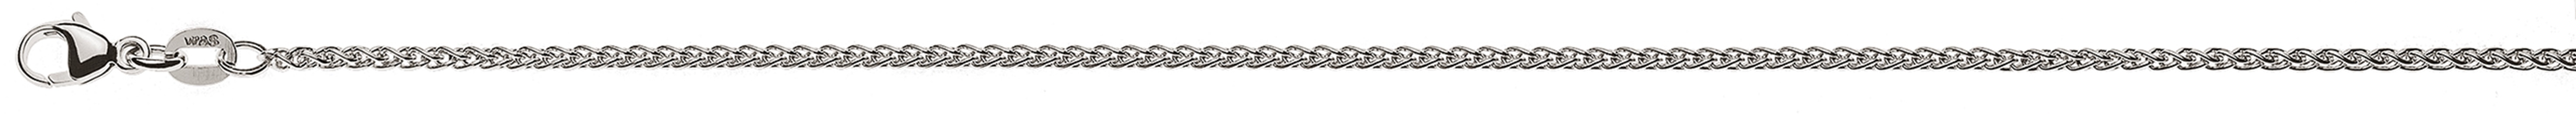 AURONOS Élégance Necklace white gold 14K cable chain 38cm 1.65mm